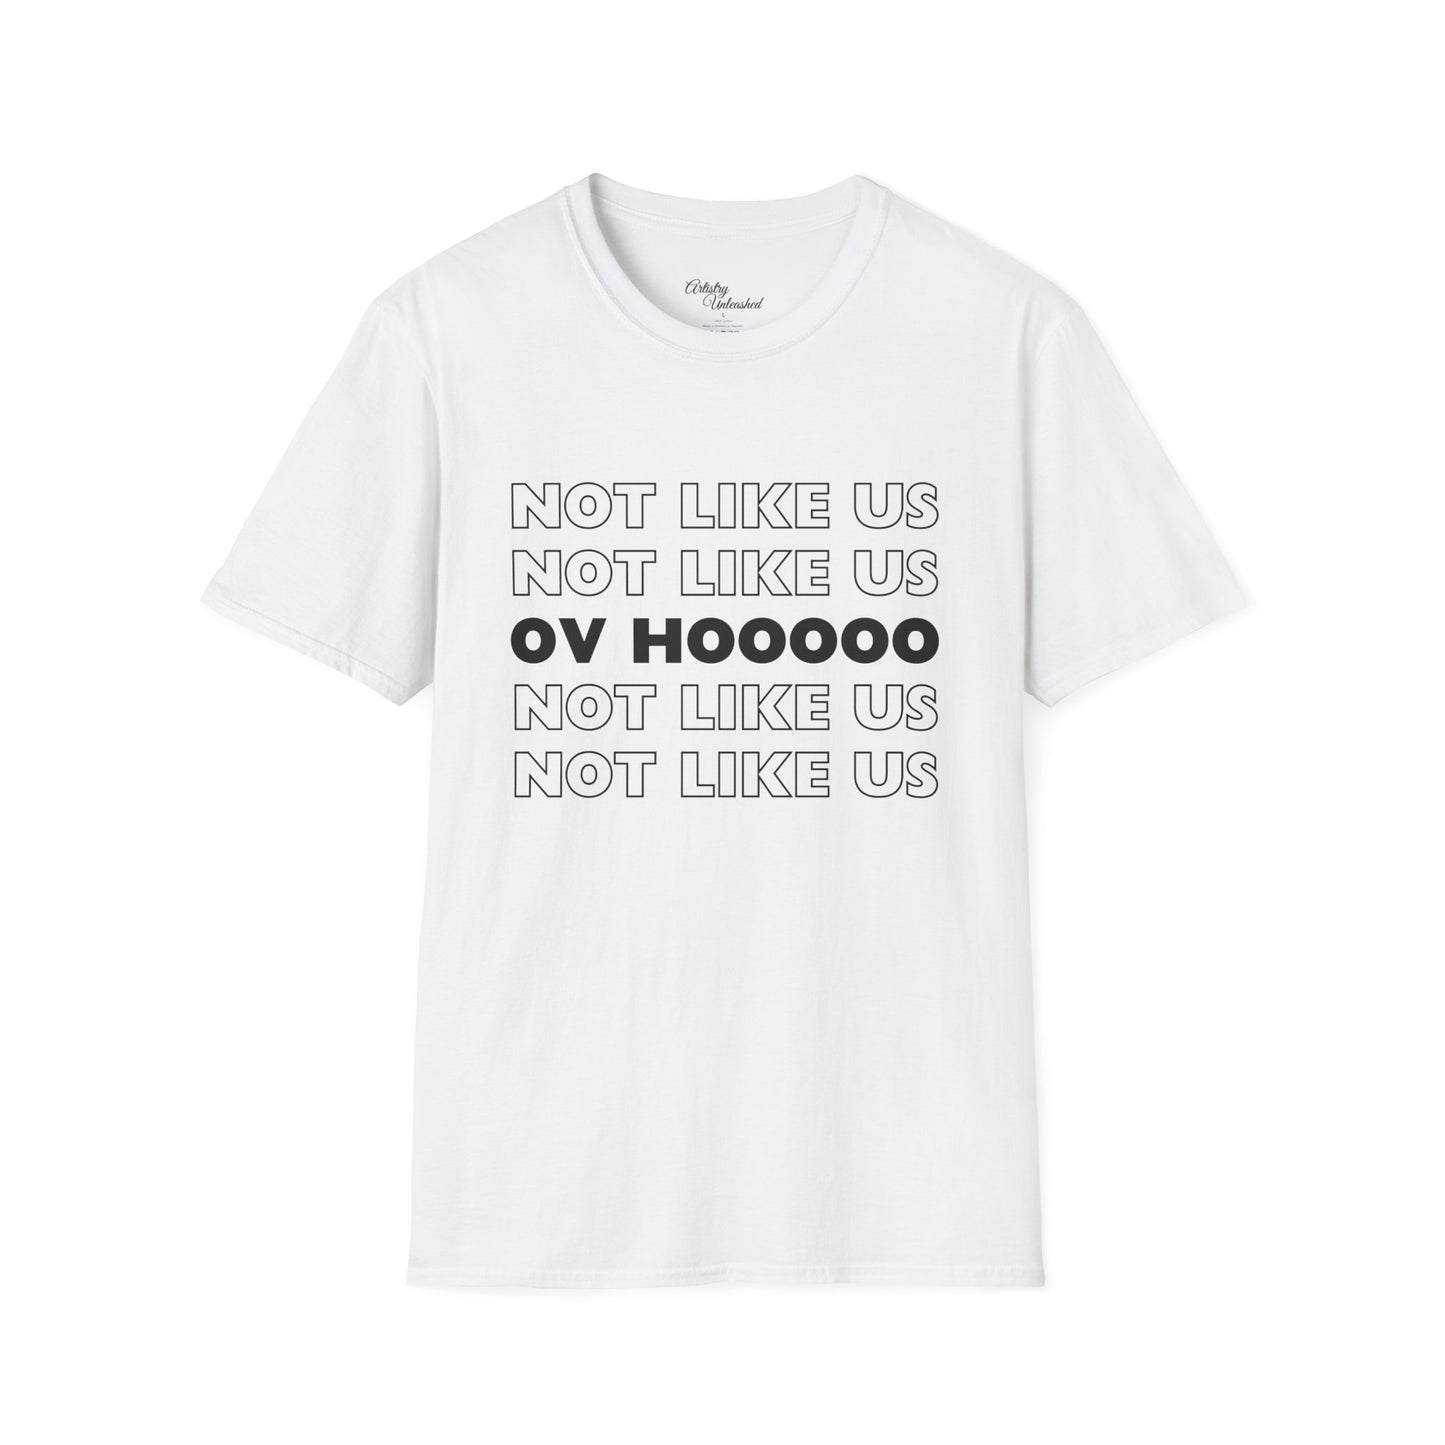 Not Like Us OV Ho Unisex Softstyle T-Shirt